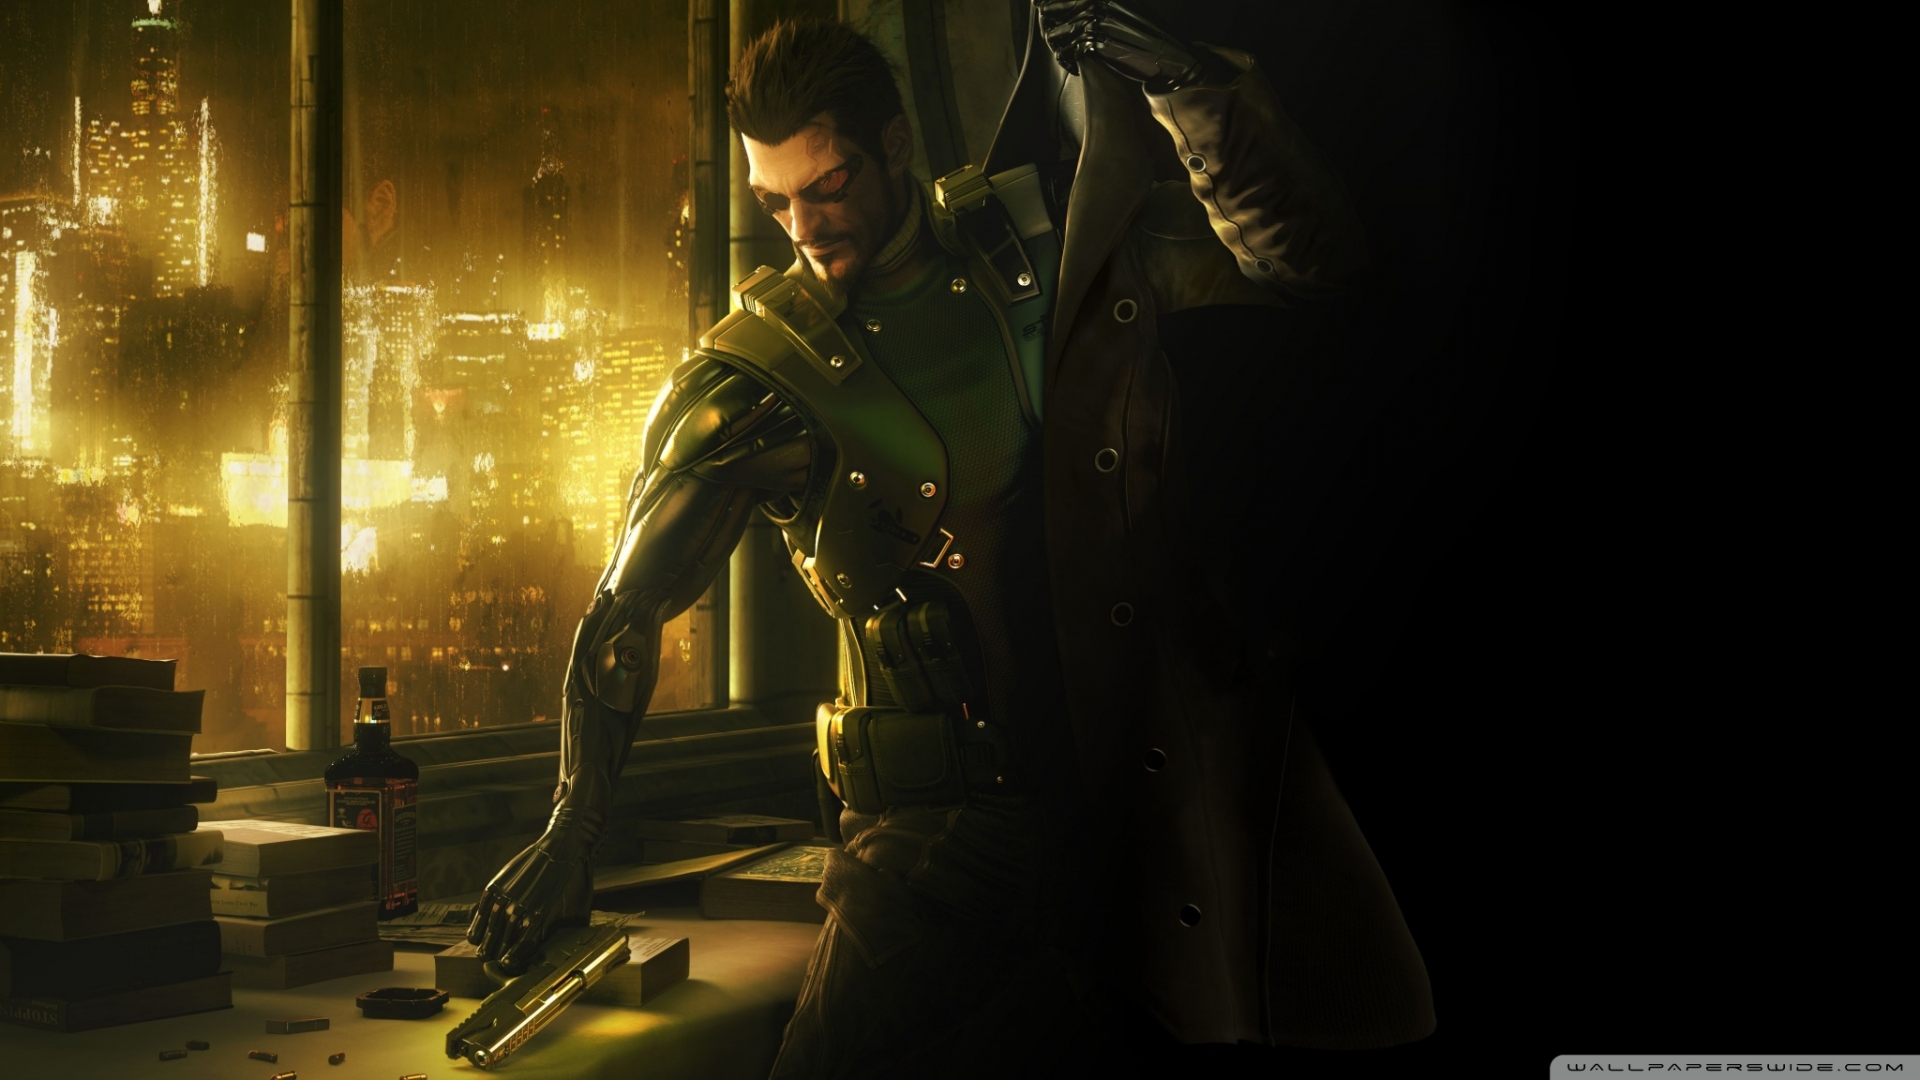 Арт к игре Deus Ex: Human Revolution